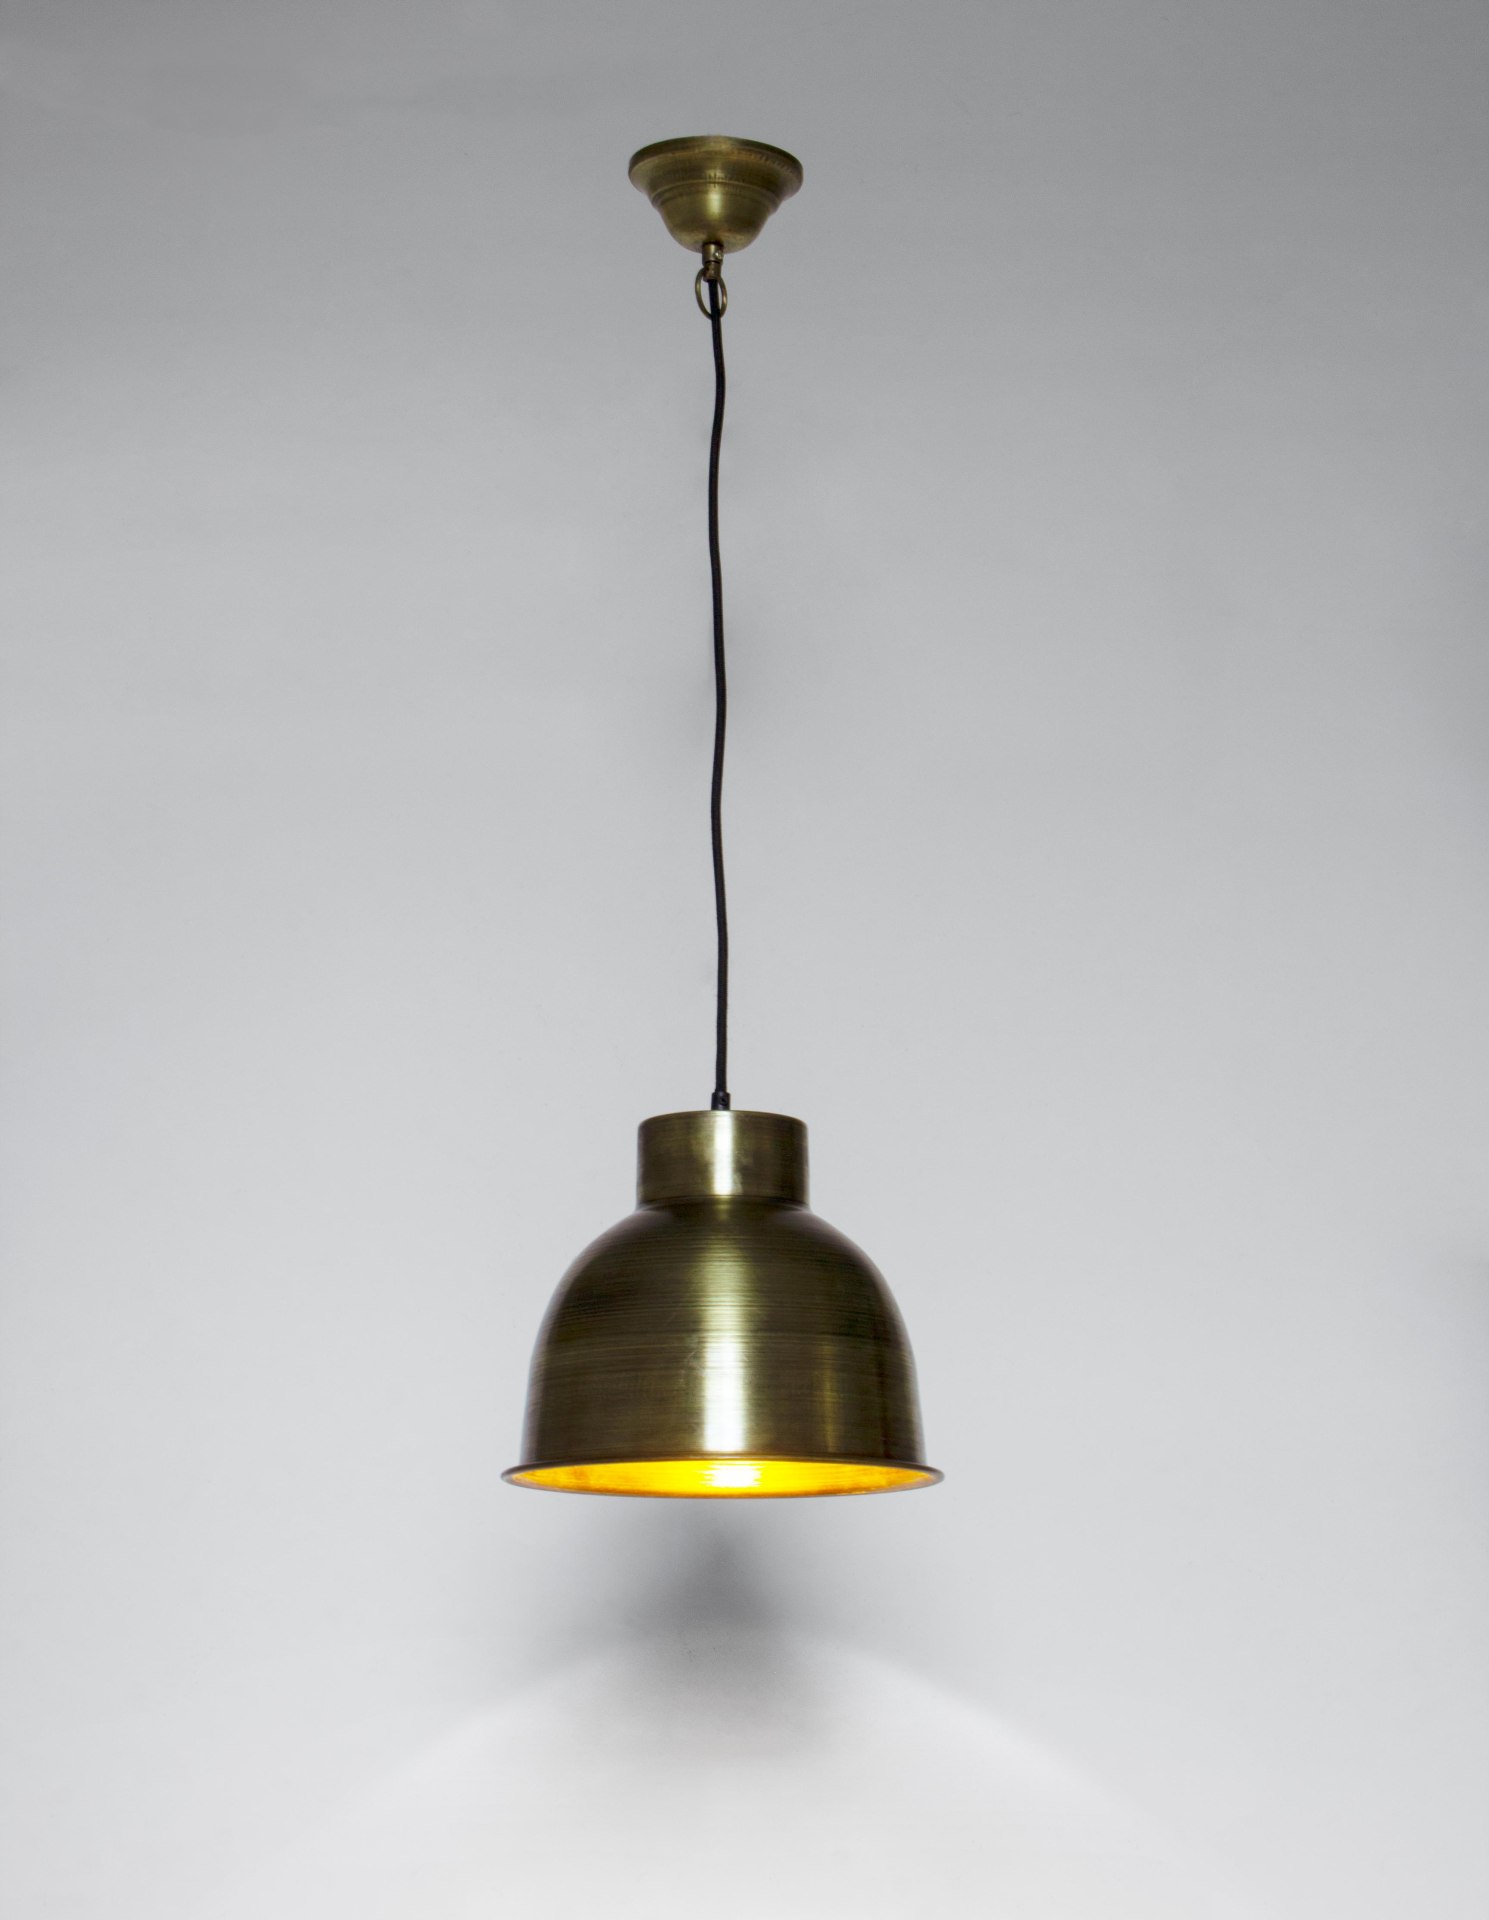 Die Hängeleuchte Maribel überzeugt mit ihrem klassischen Design. Gefertigt wurde sie aus Metall, welches einen goldenen Farbton besitzt. Das Gestell ist auch aus Metall. Die Lampe besitzt eine Höhe von 25 cm.